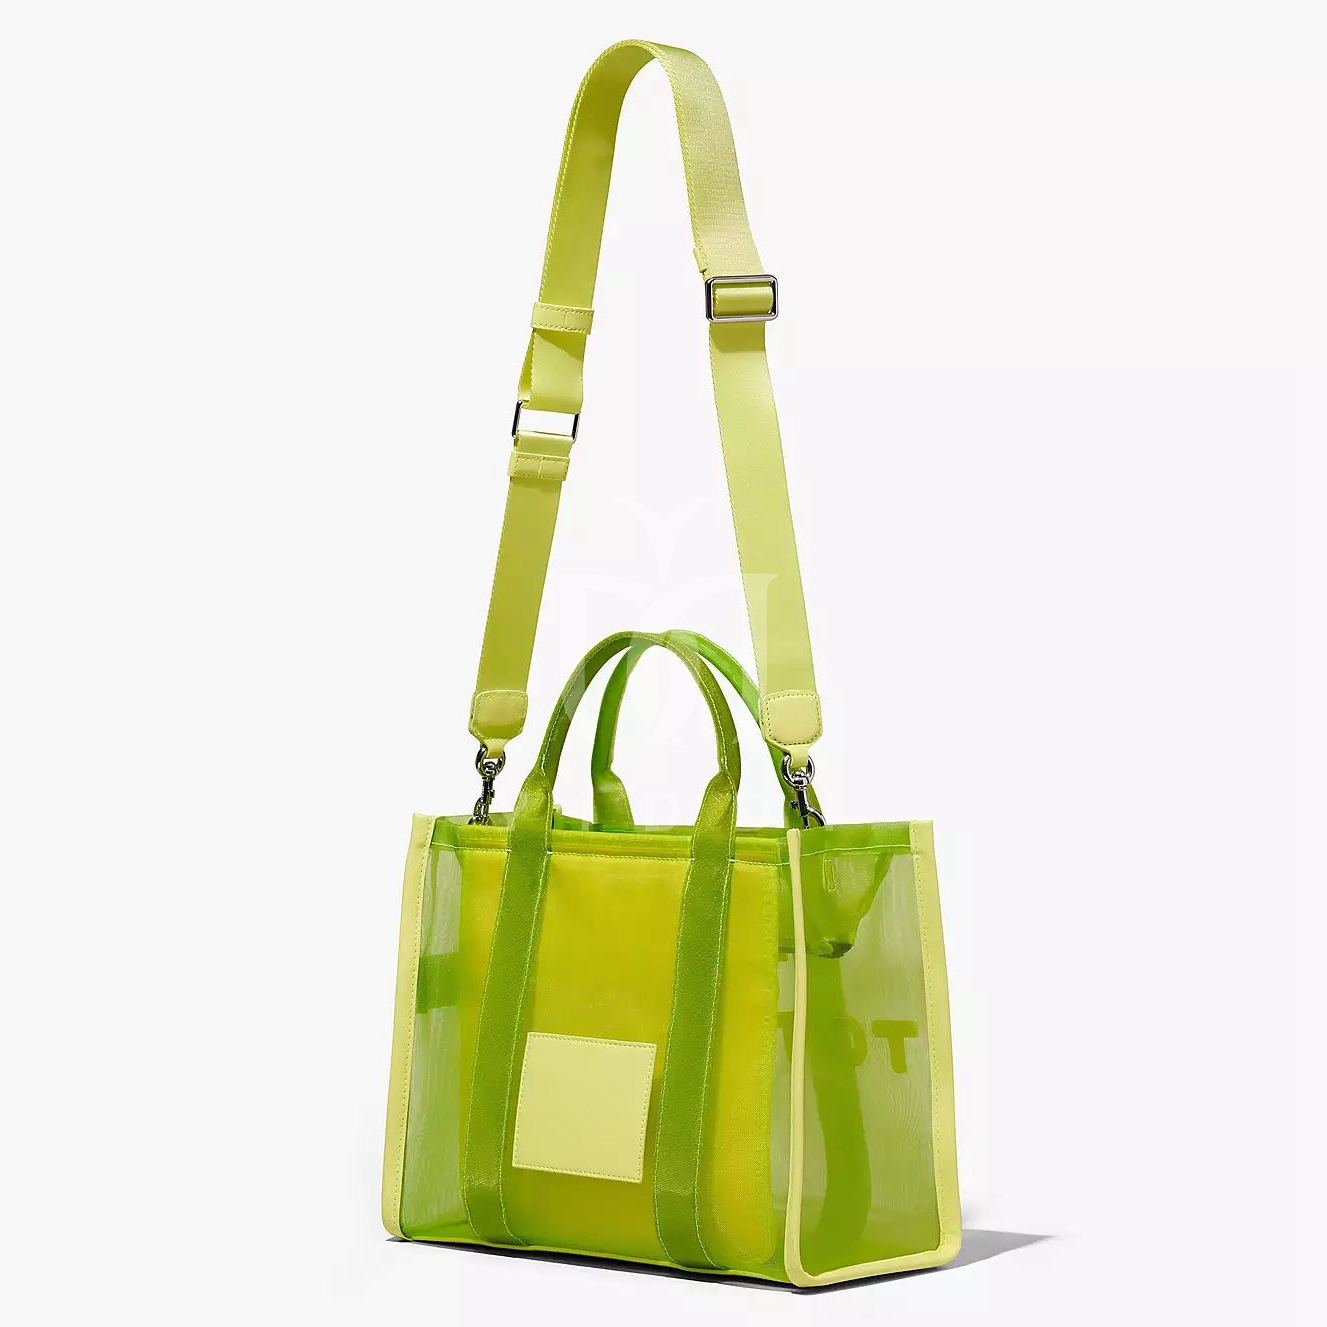 Borse firmate marc tote bag Tote bag designer Colorblocking Mesh Medium Borse a tracolla semplici di grande capacità crossbody casual